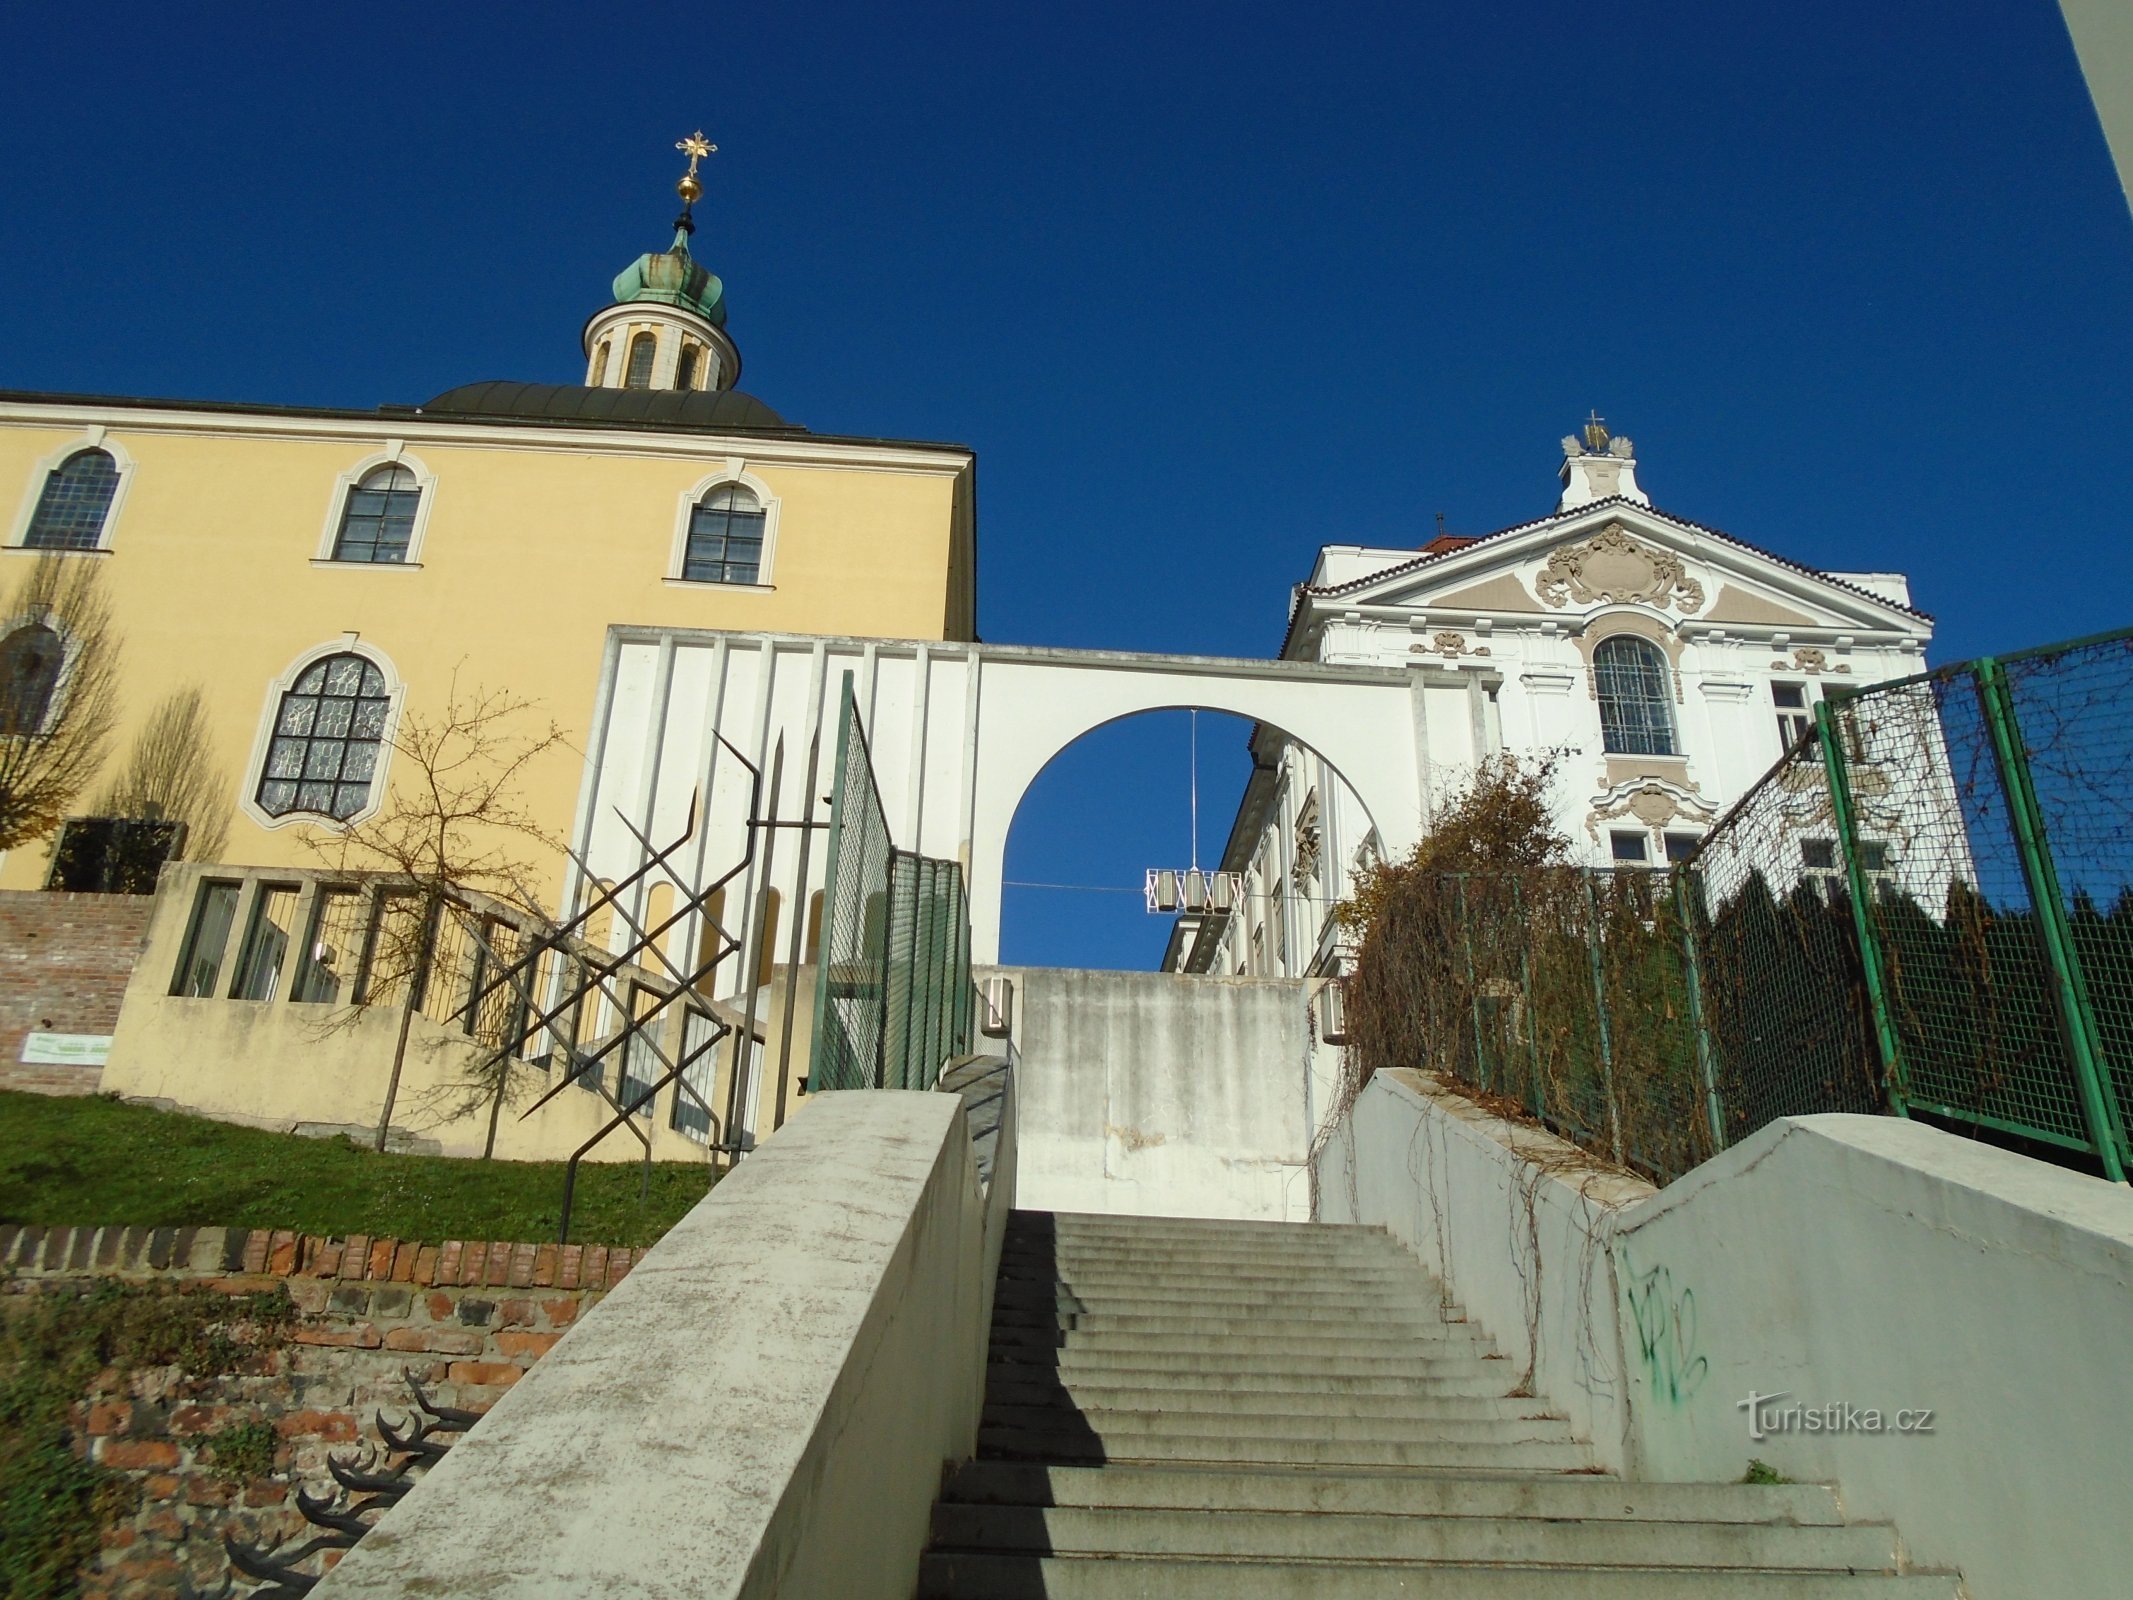 Staircase Na Kropáčka (Hradec Králové, 17.11.2018/XNUMX/XNUMX)